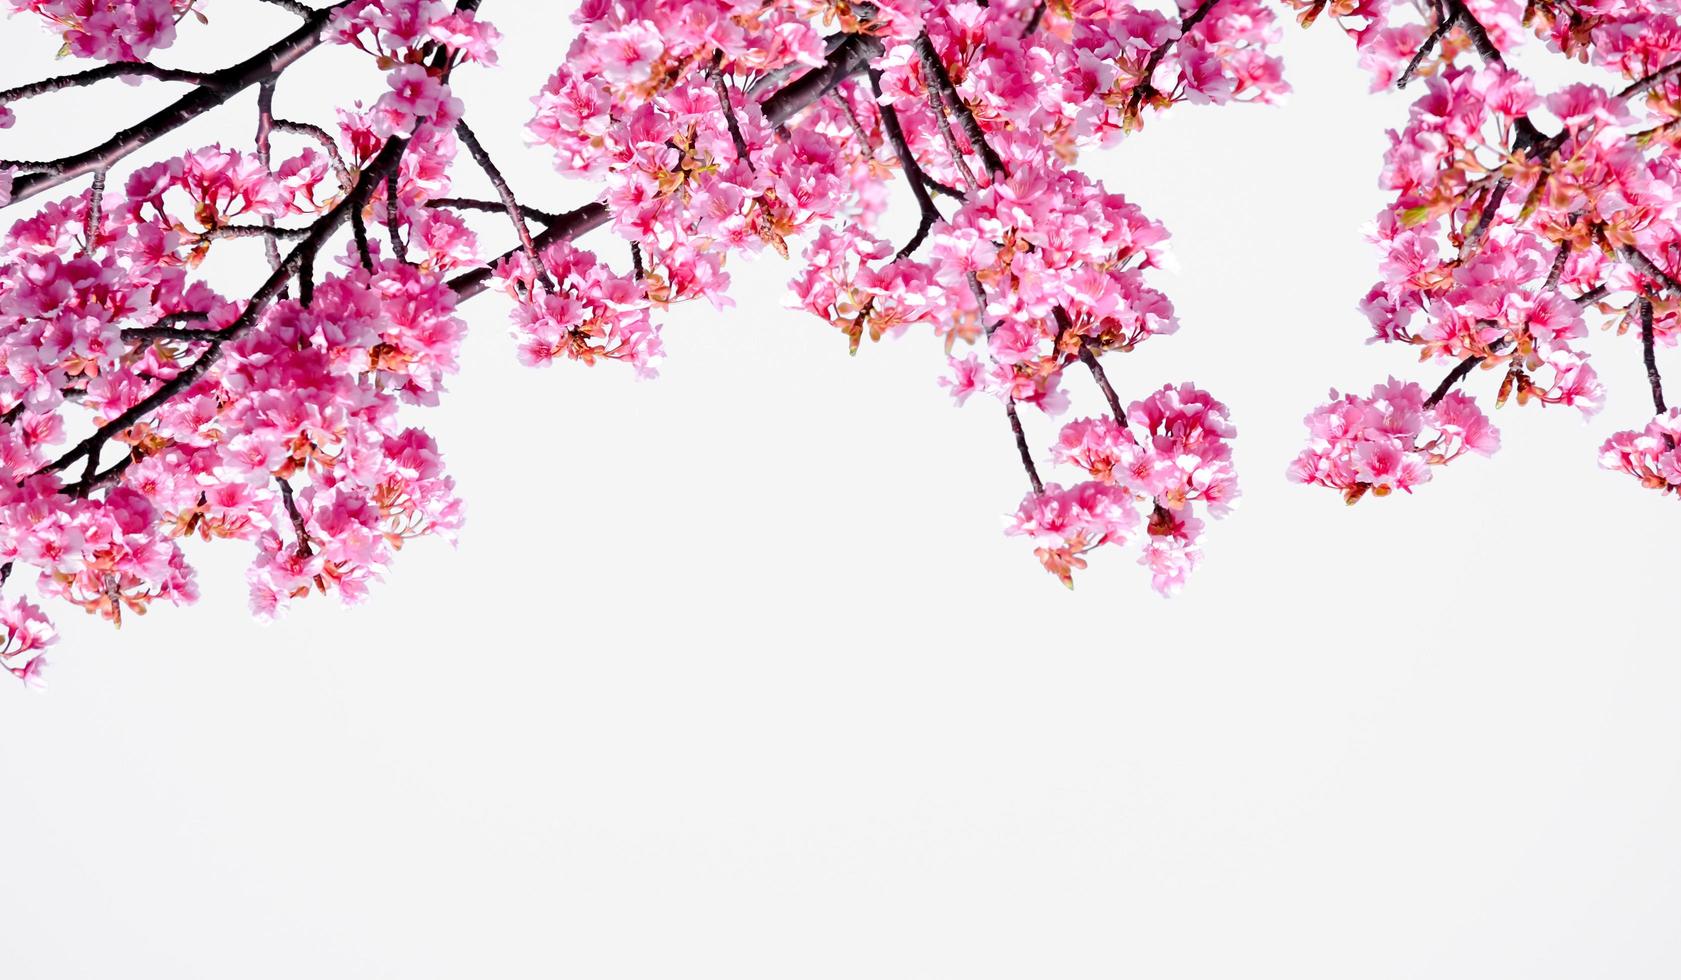 mjuk pastell Färg skön körsbär blomma sakura blomning med fading in i pastell rosa sakura blomma, full blomma en vår säsong i japan foto